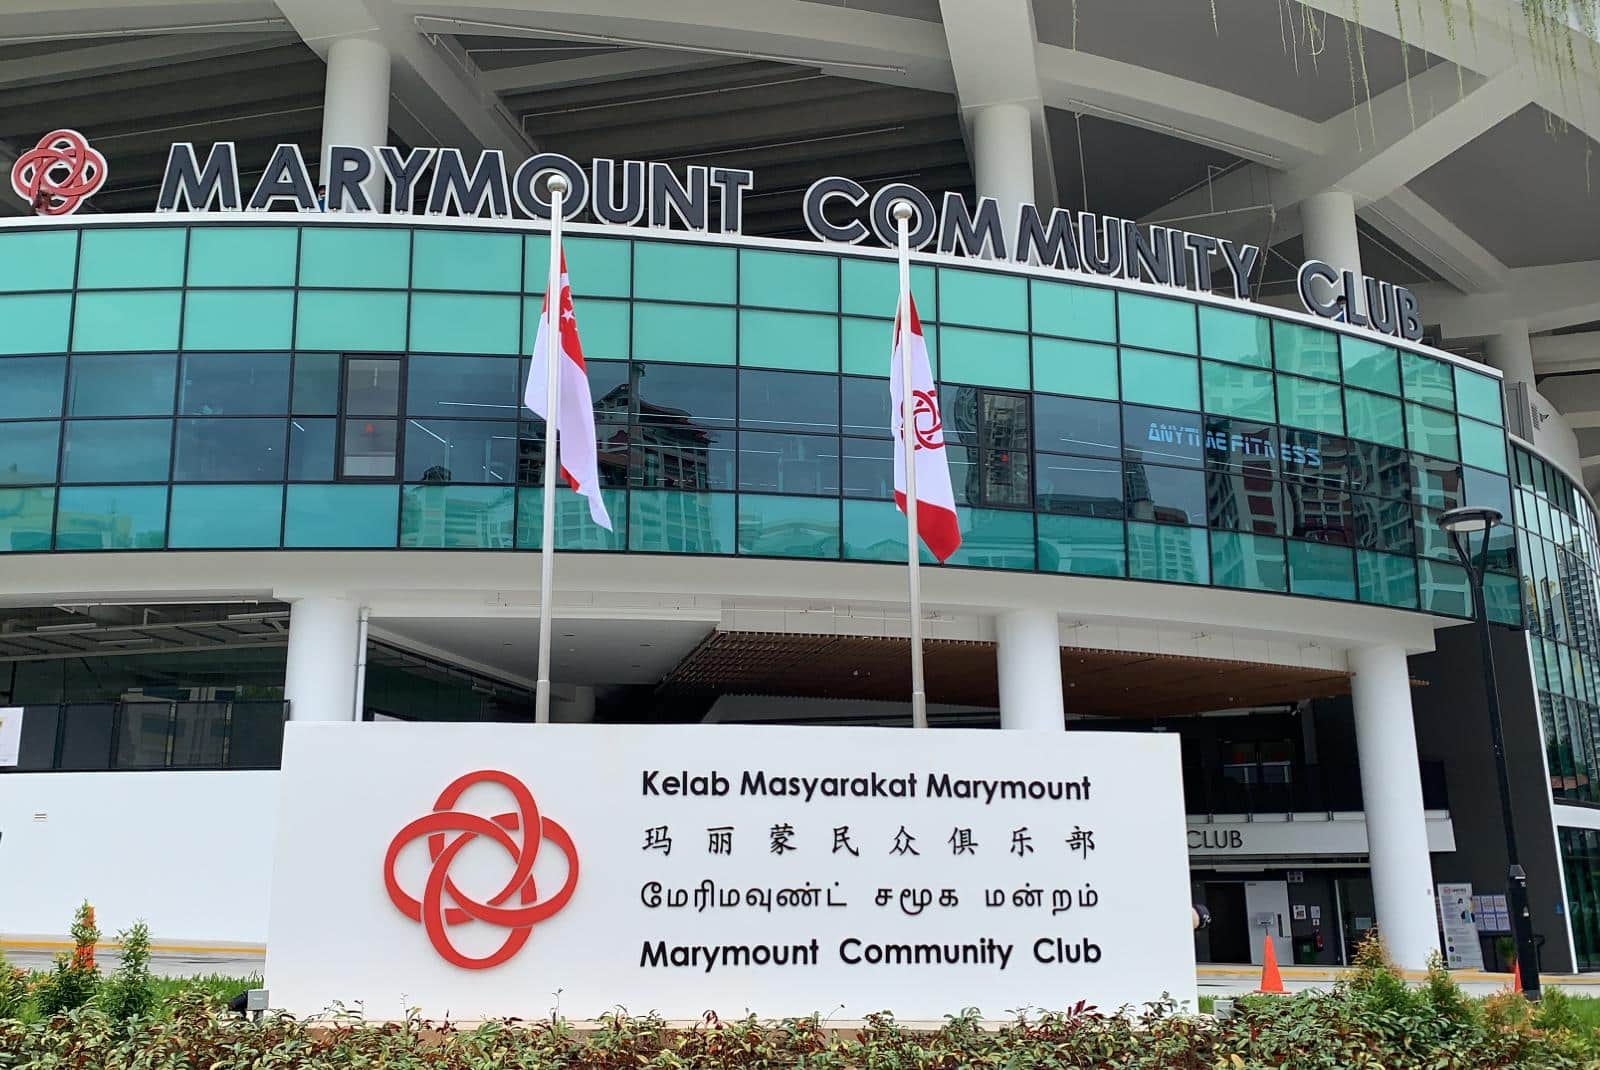 Marymount Community Club